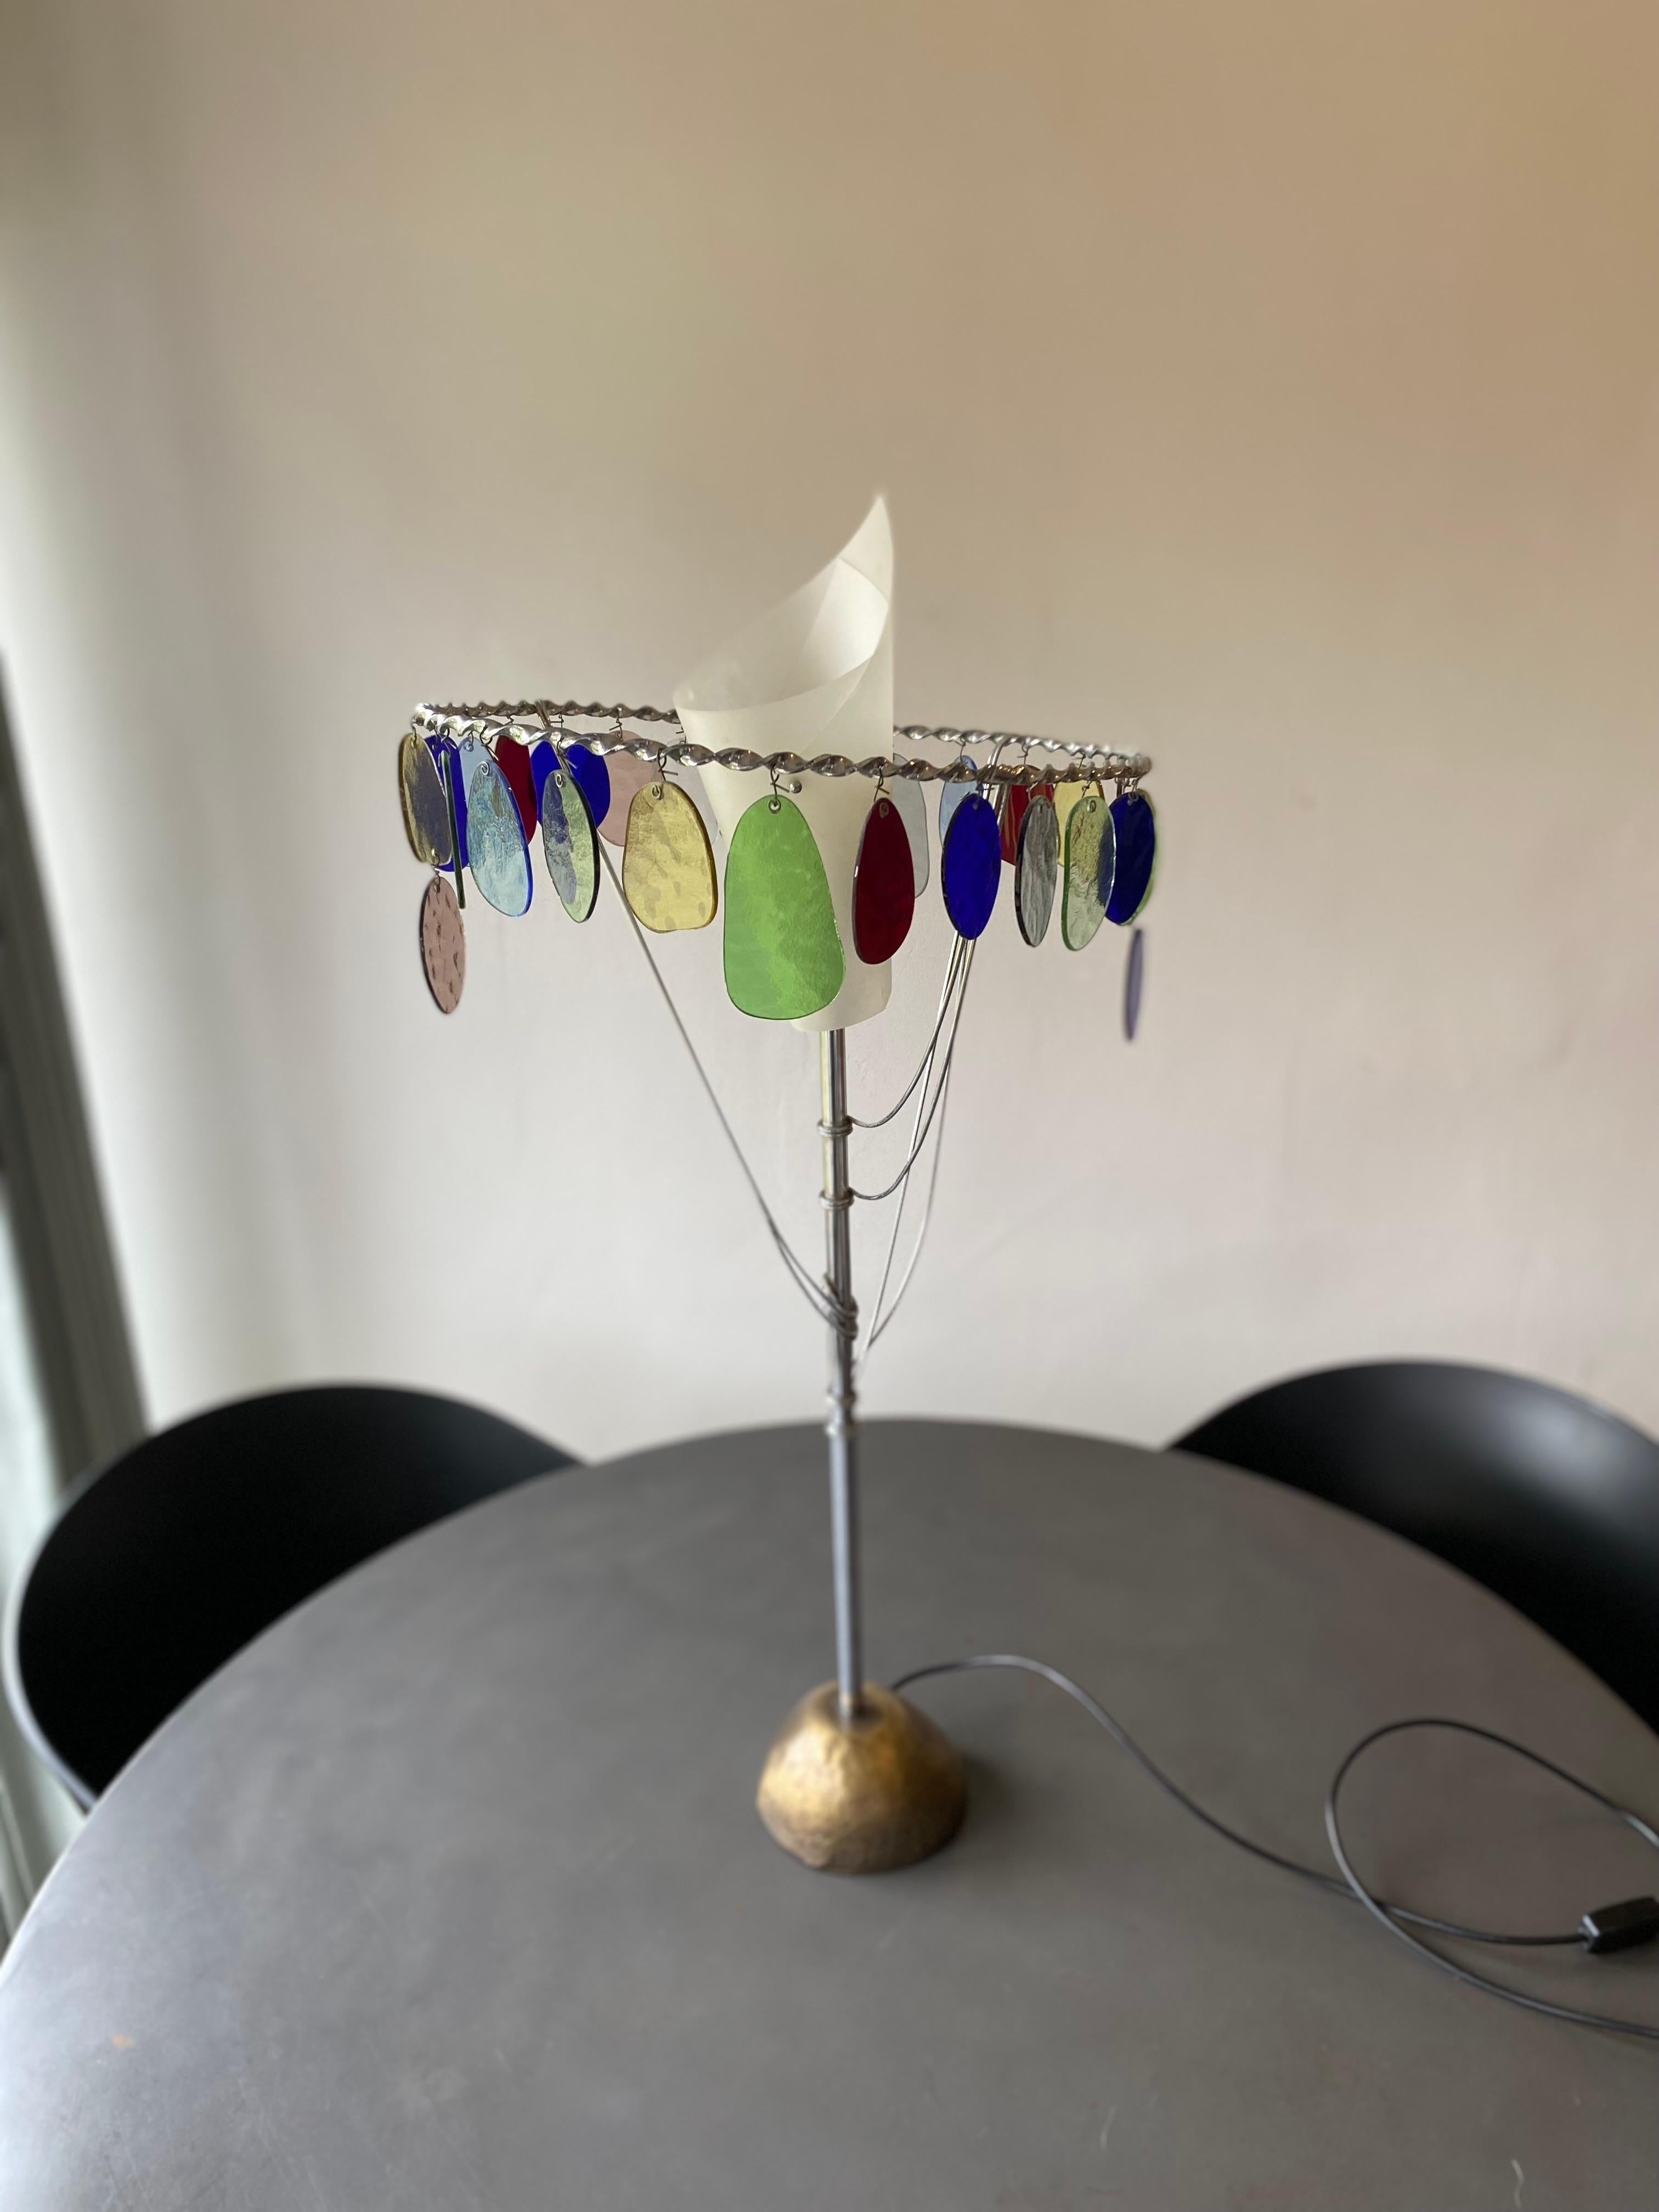 Die Leuchte Sibari des italienischen Designers Toni Cordero (1937-2001) gehört zu einer Serie von Lichtskulpturen aus Milano Torino, wie die Ecate oder die Anchise, die 1990 in kleinen Stückzahlen produziert wurden. Der Methacrylat-Schirm auf dem